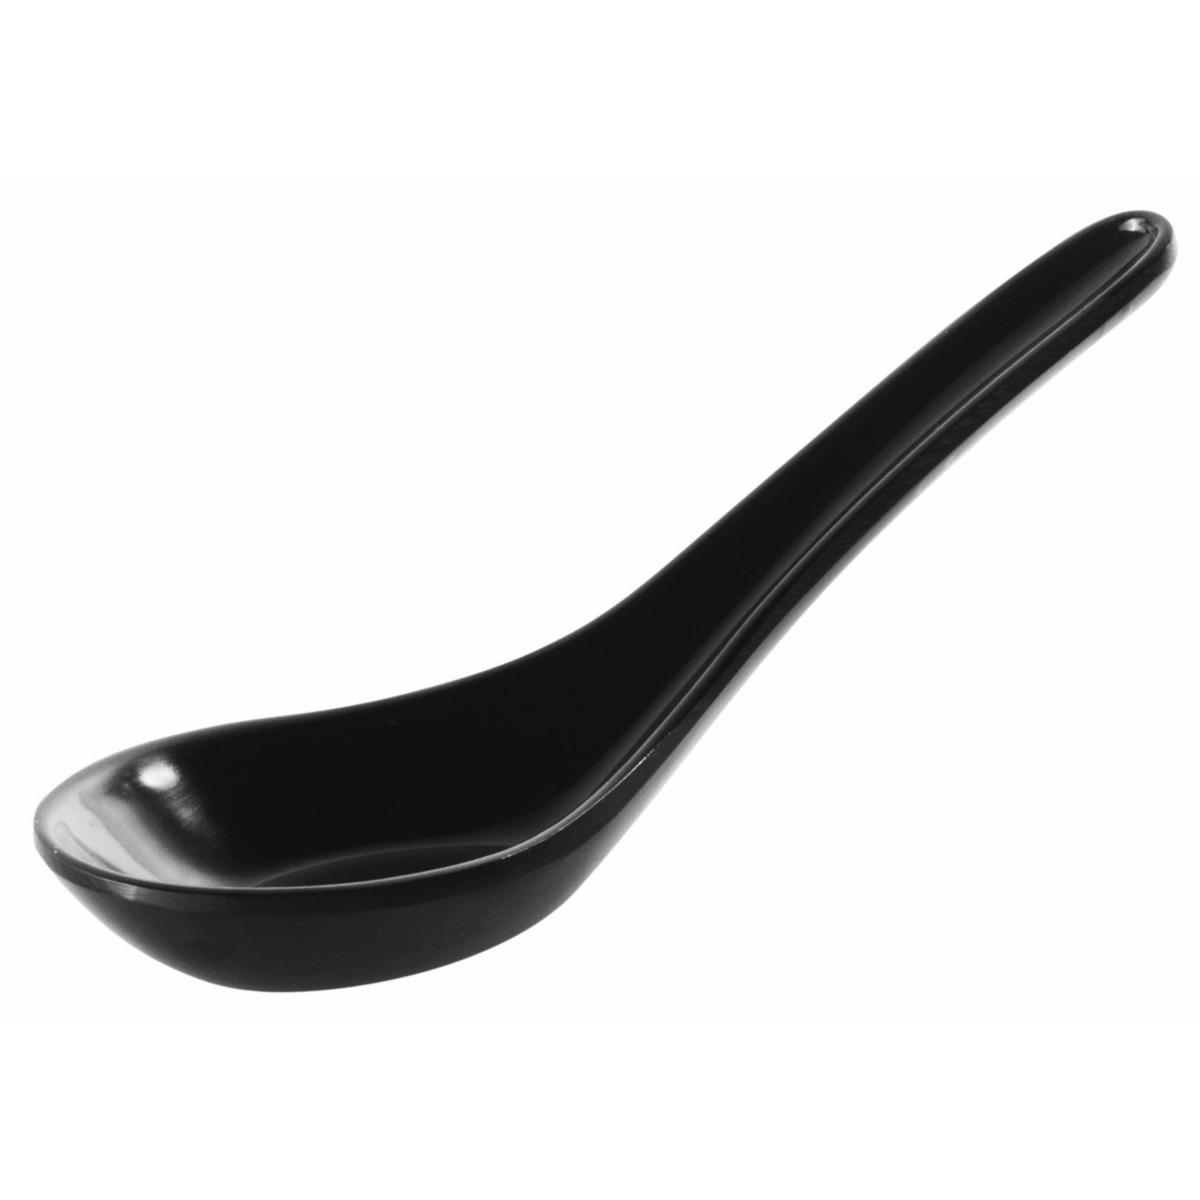 Cucchiaio fingerfood cm 13,5x4,5 easy black&white melamina nero